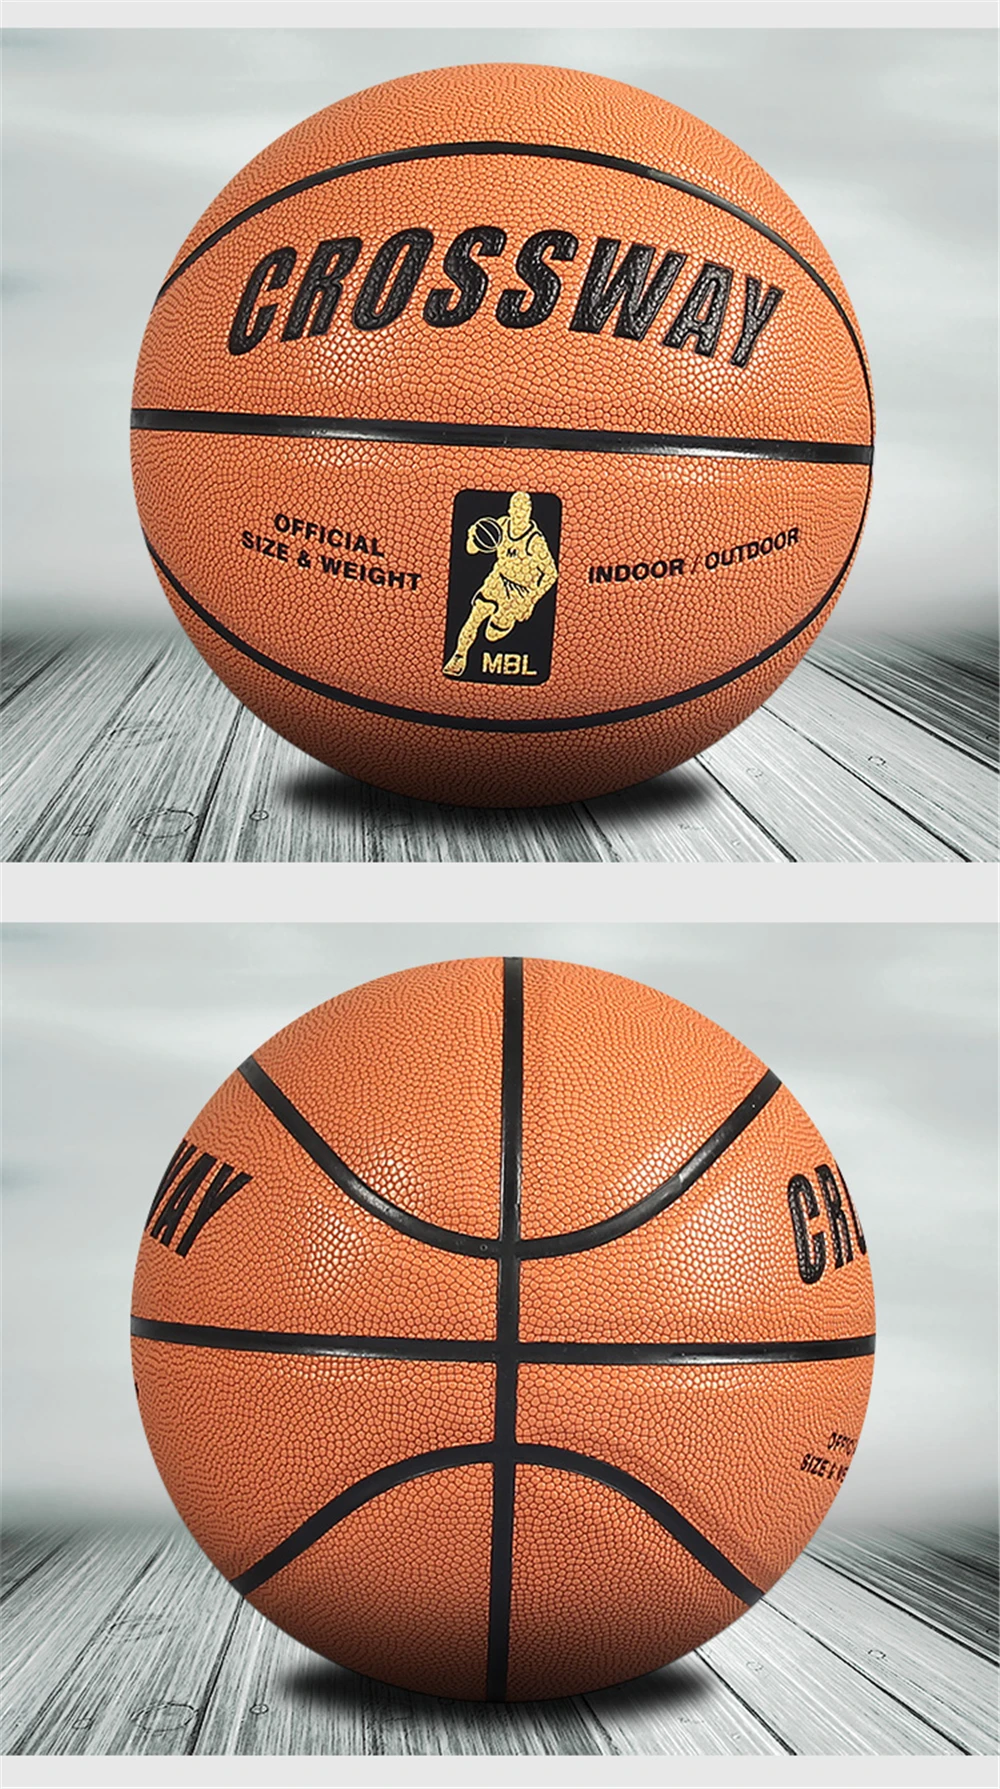 Главная & Away Crossway 2018 Лидер продаж Крытый Размеры 7 кожа баскетбольный мяч ПУ Обучение конкуренция Баскетбол